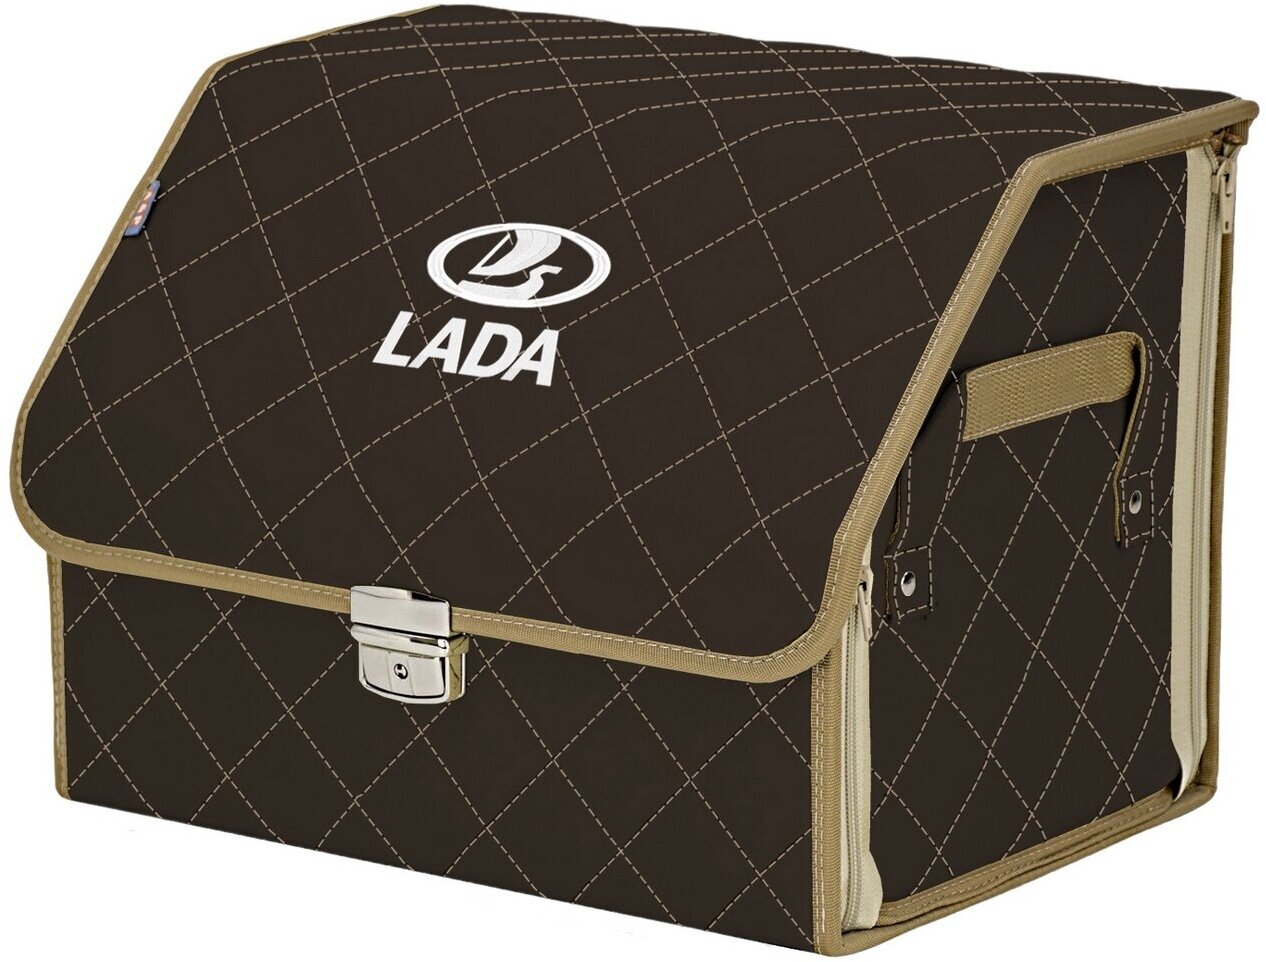 Органайзер-саквояж в багажник "Союз Премиум" (размер M). Цвет: коричневый с бежевой прострочкой Ромб и вышивкой LADA (лада).